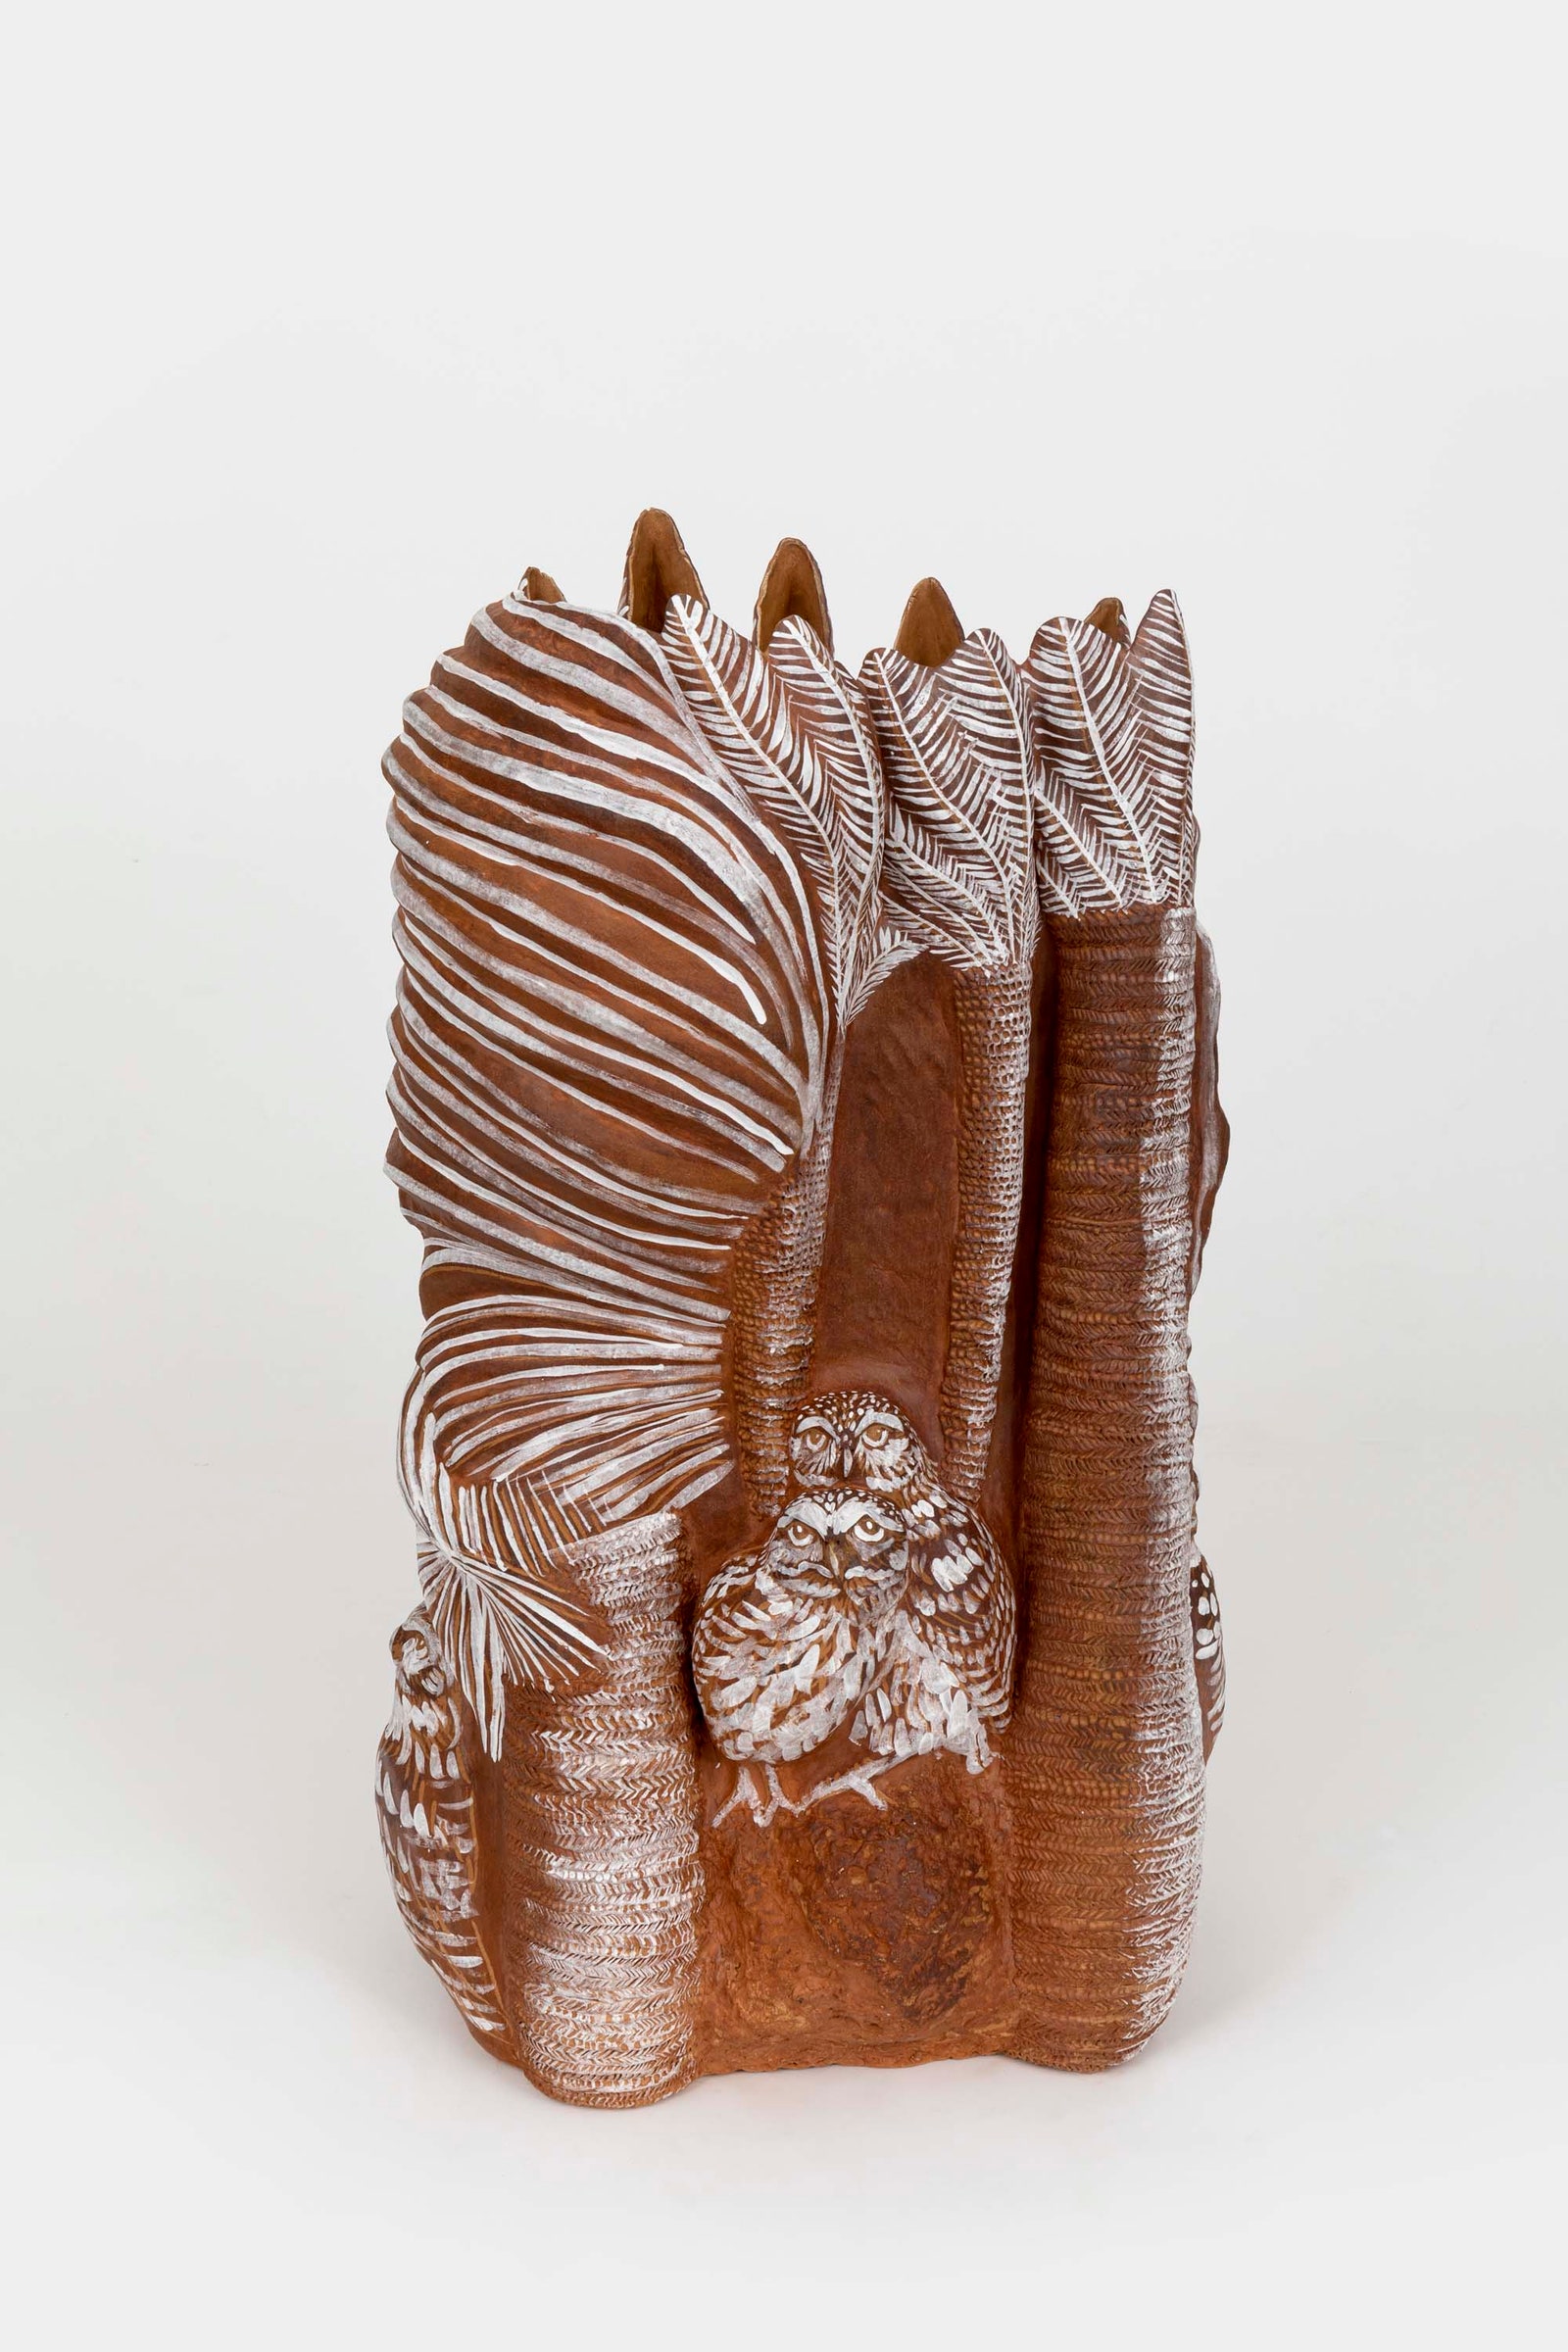 Керамическая ваза Мунджин Ким  в галерее AGOnbspProjects . Это новый проект первого артдиректора ярмарки...